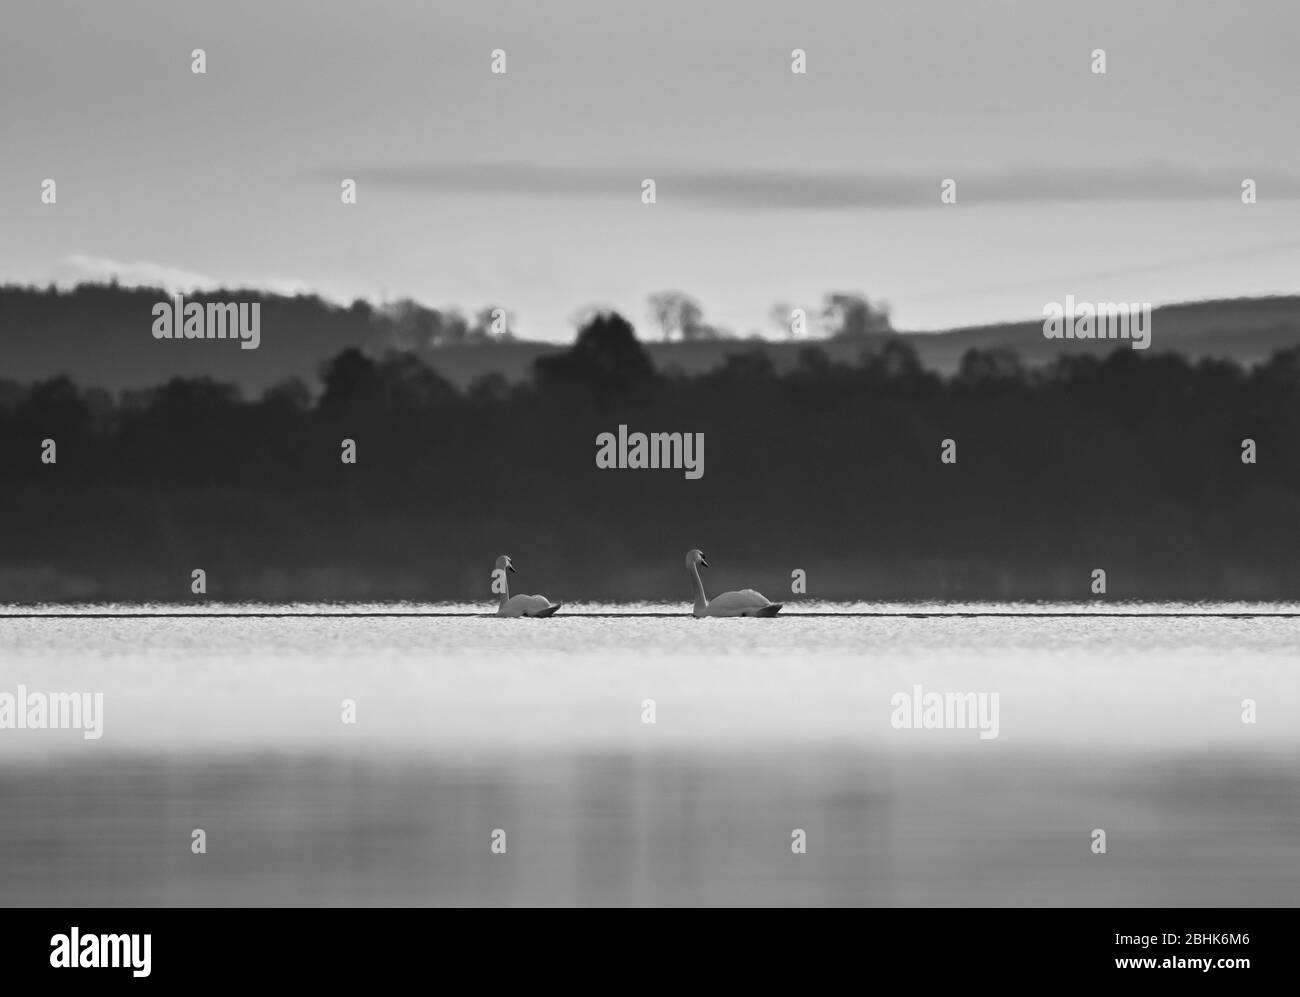 Étude monochrome de deux cygnes muets (Cygnus olor) nageant sur un lac. Banque D'Images